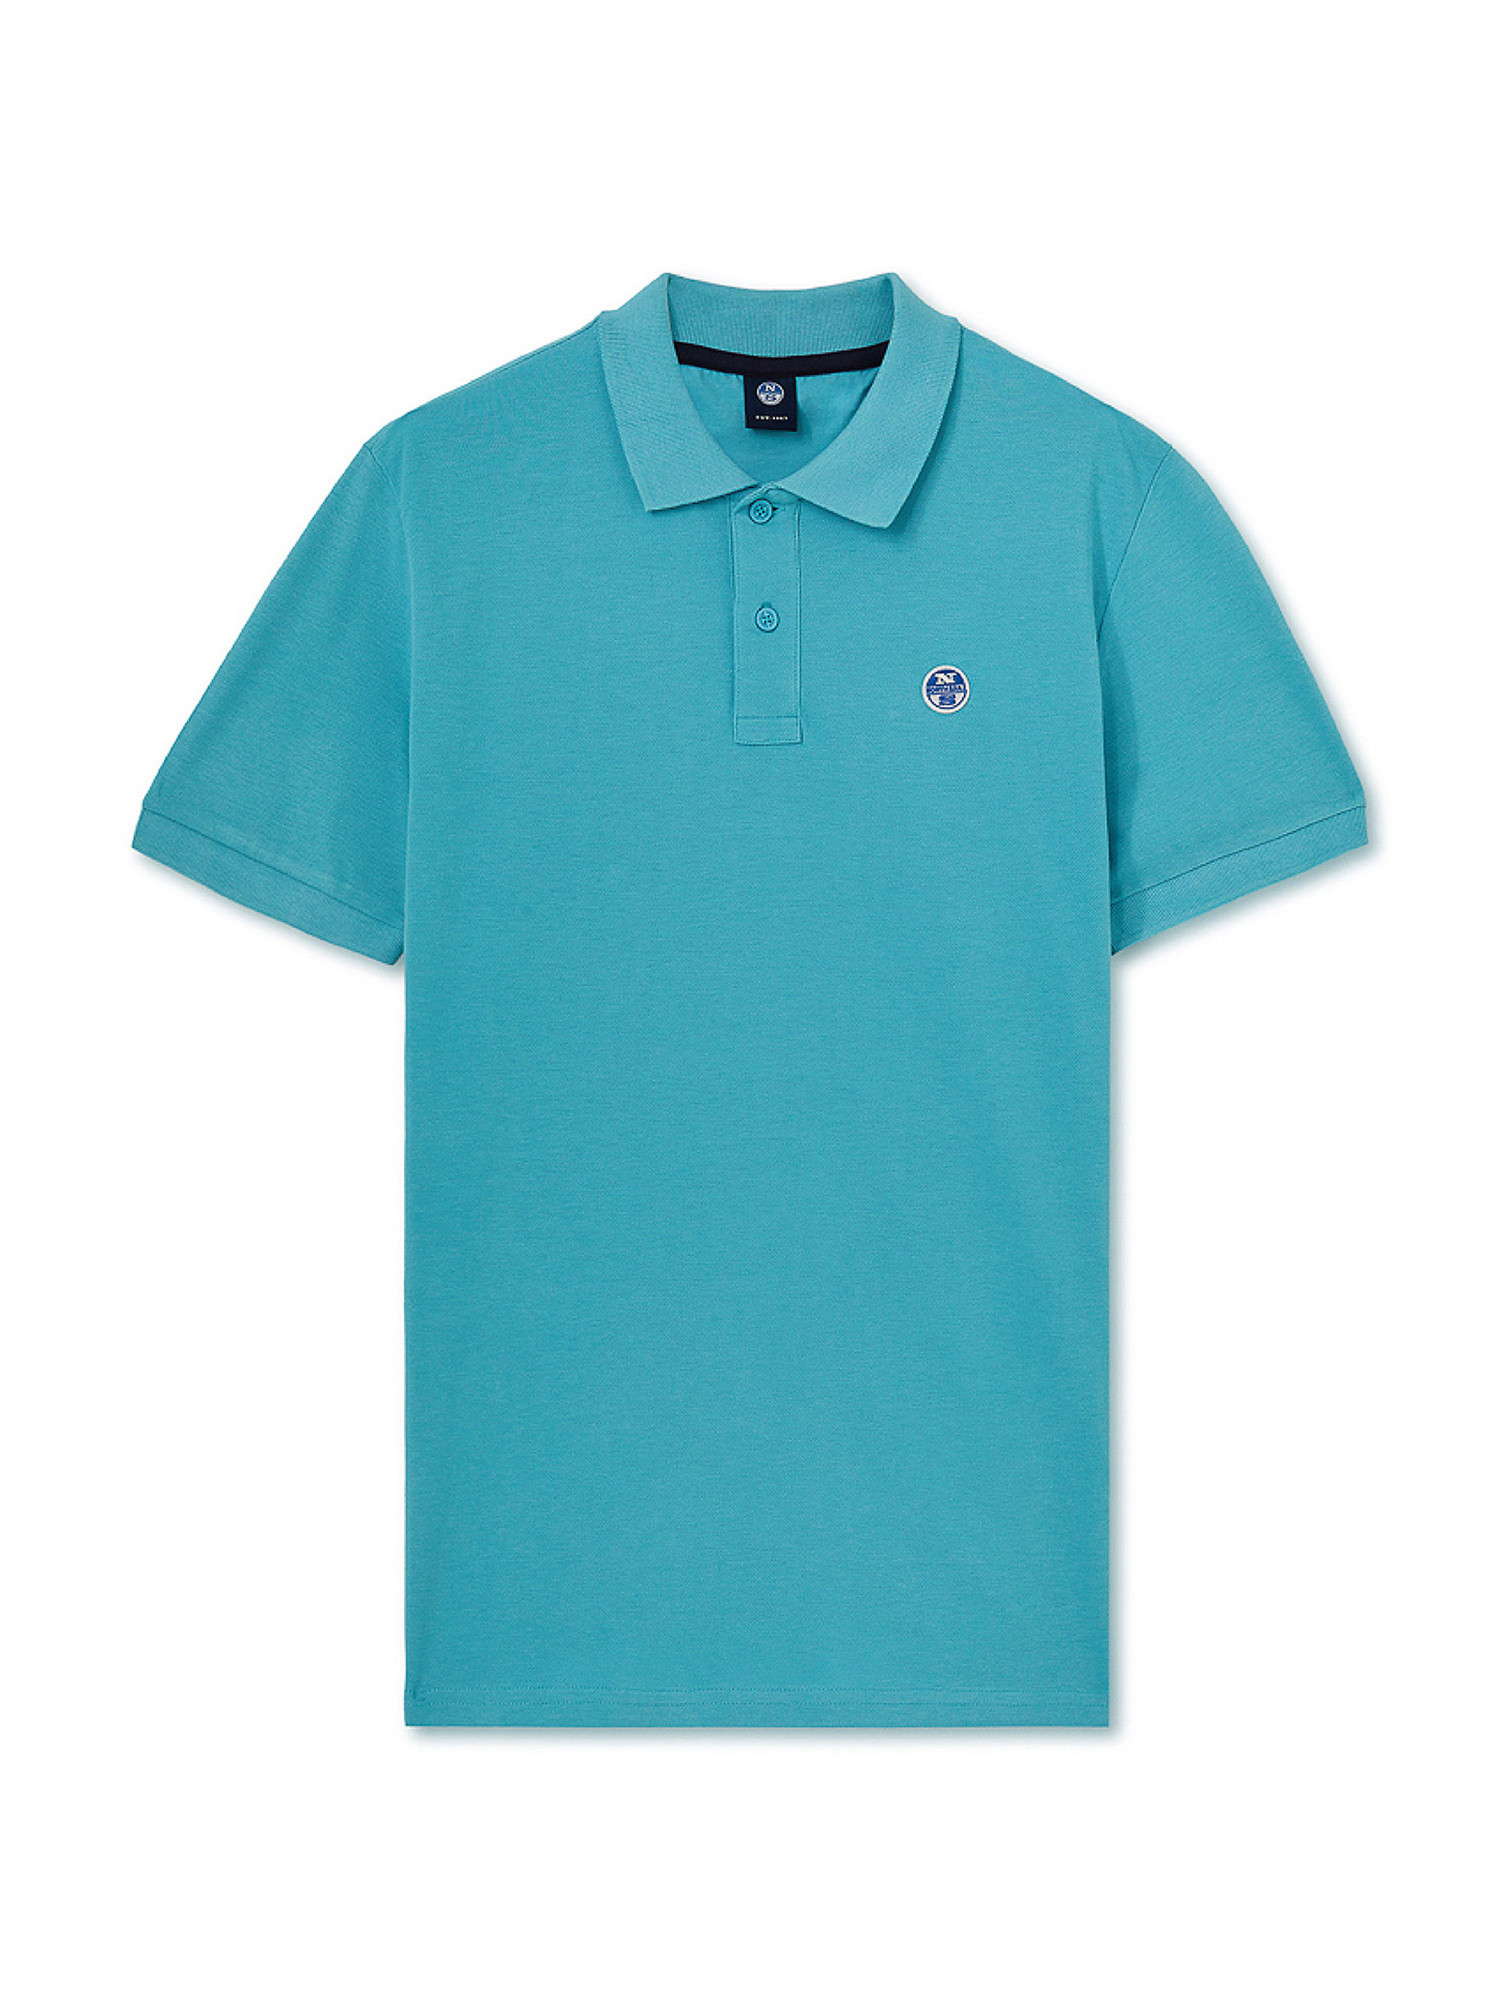 Short sleeve polo shirt with logo, Turquoise, large image number 0